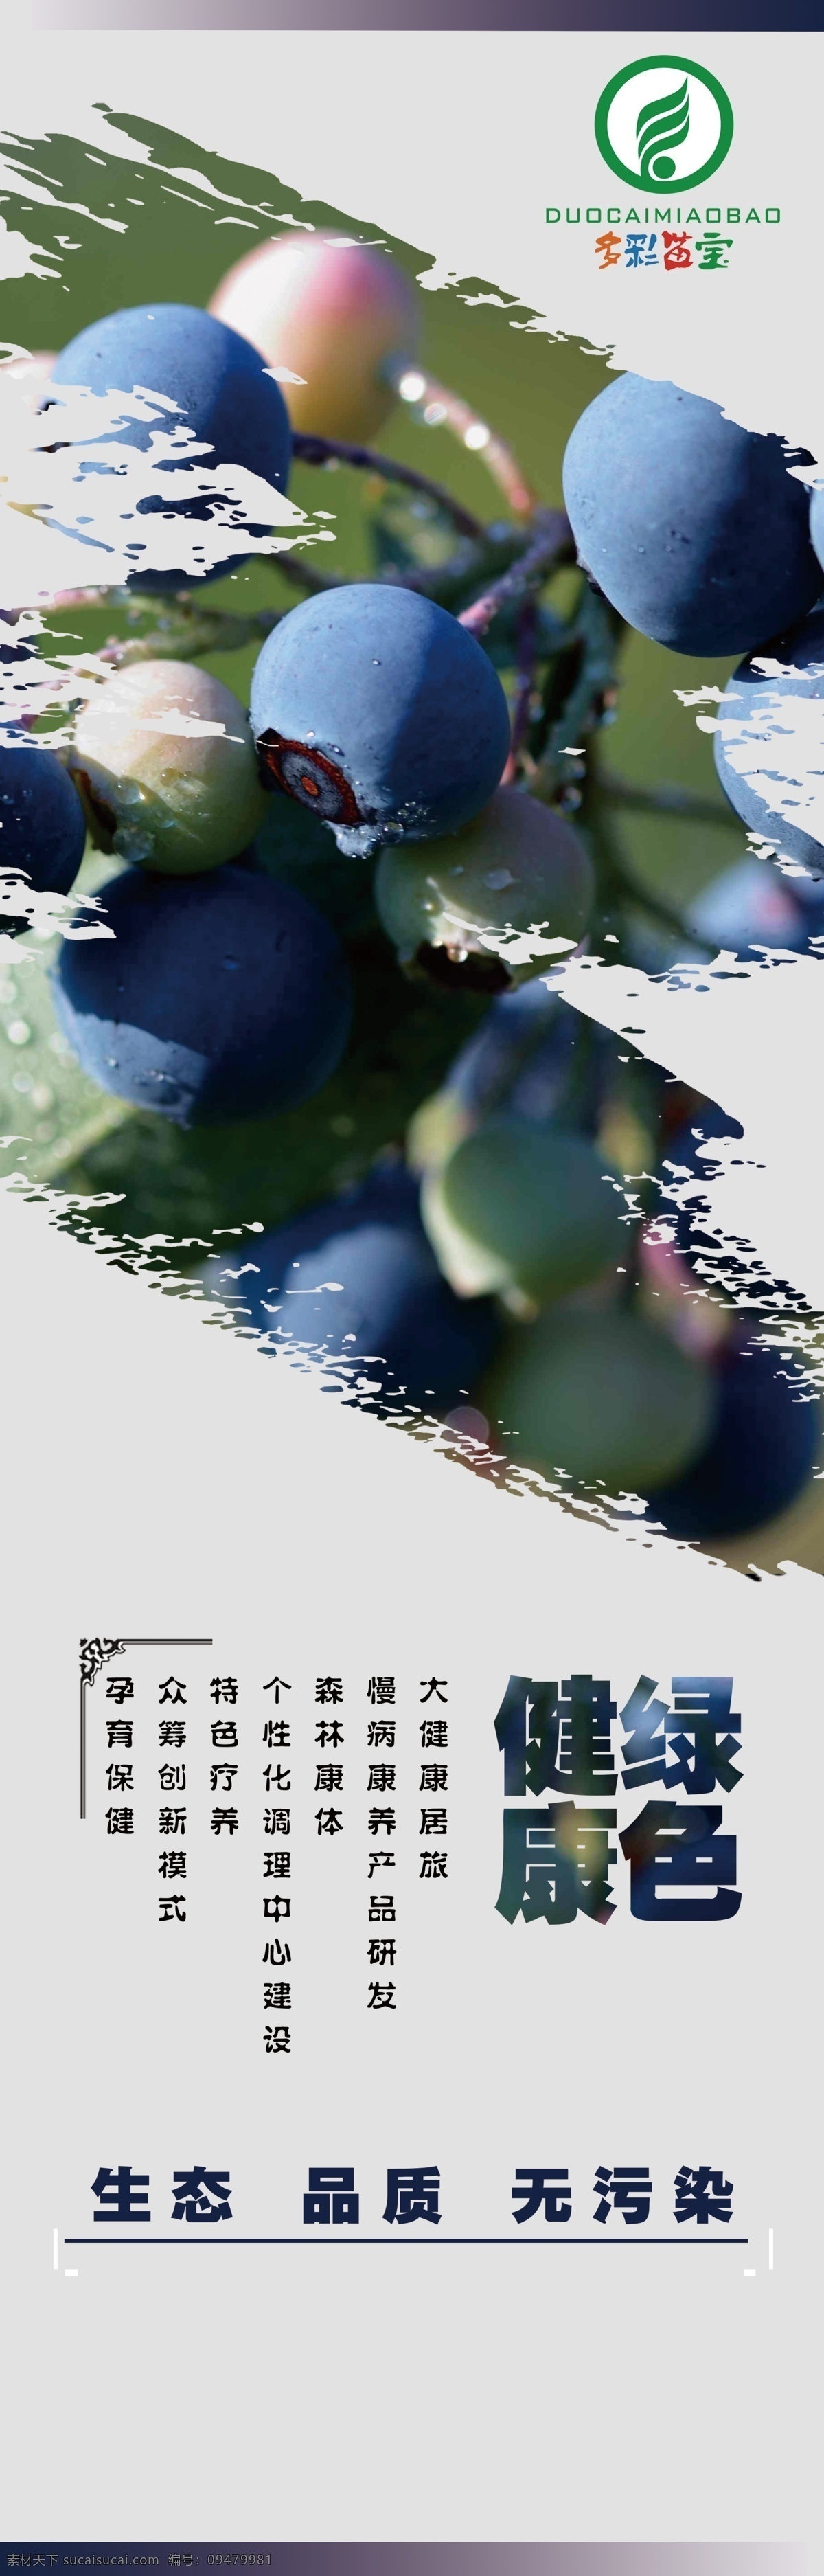 蓝莓海报 蓝莓健康 绿色蓝莓 多彩苗宝 蓝莓作用